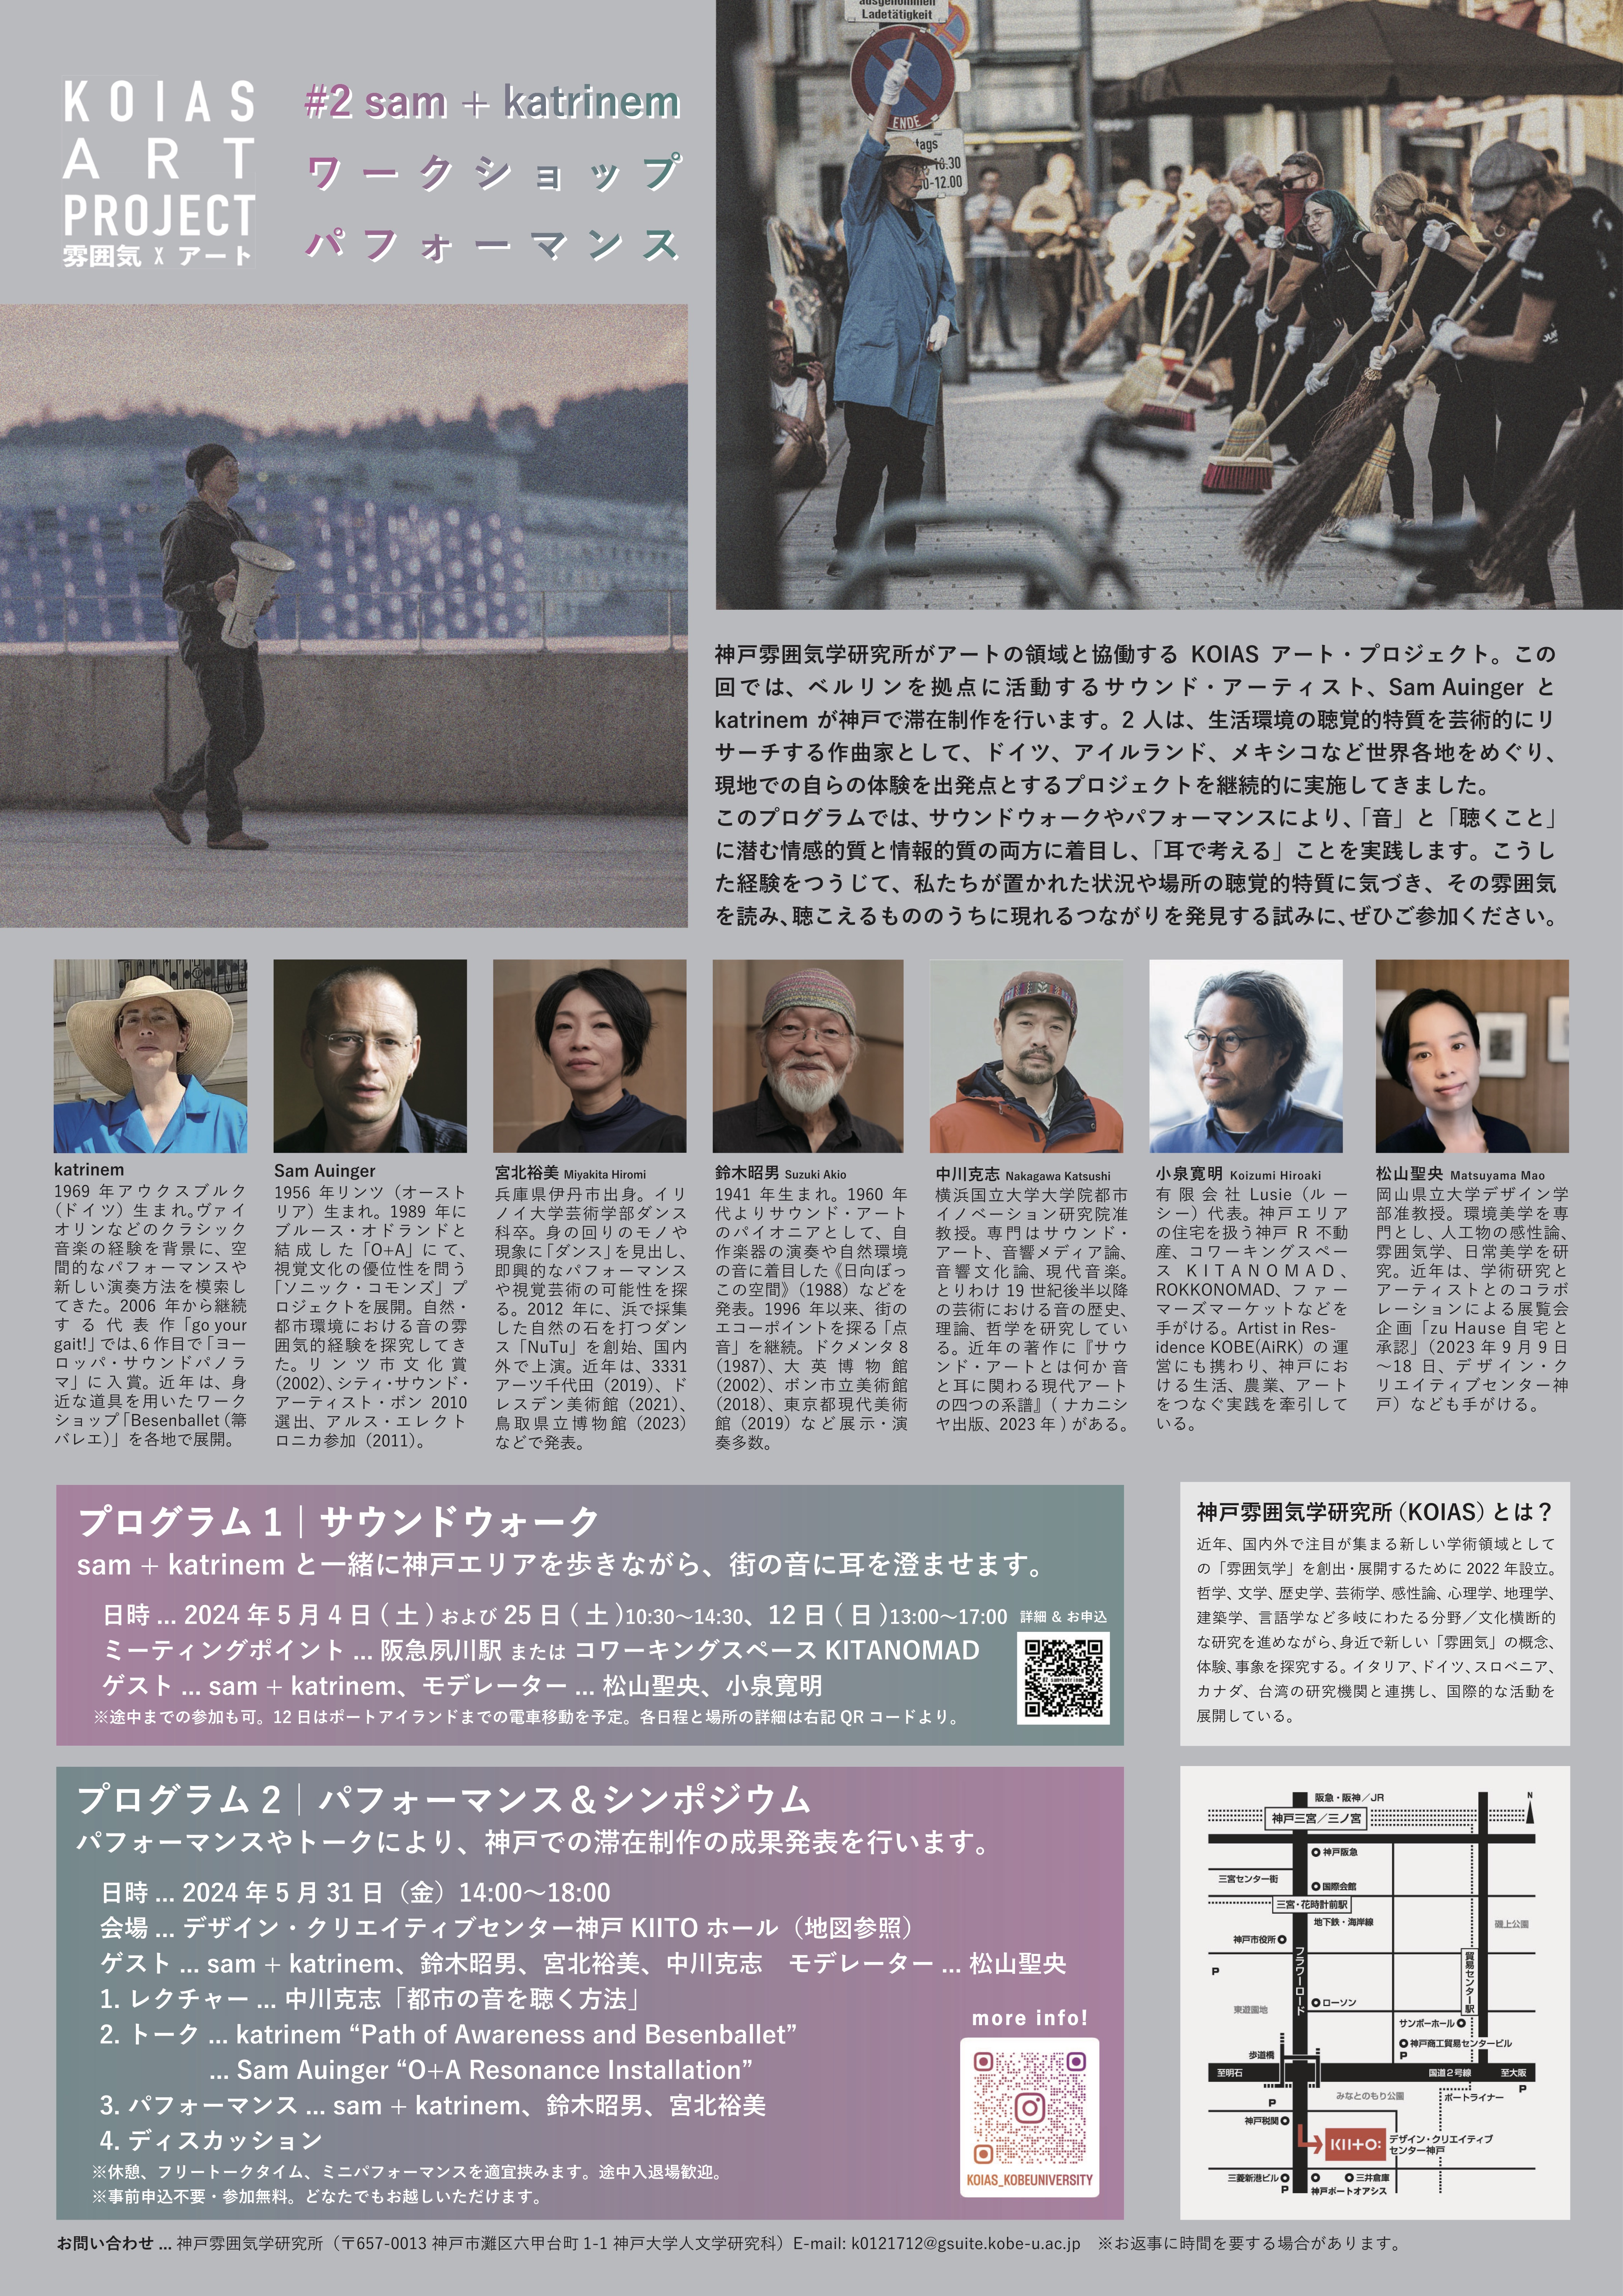 中川克志准教授がKOIAS（神戸雰囲気学研究所）のアート・プロジェクトが開催するシンポジウムに登壇します。